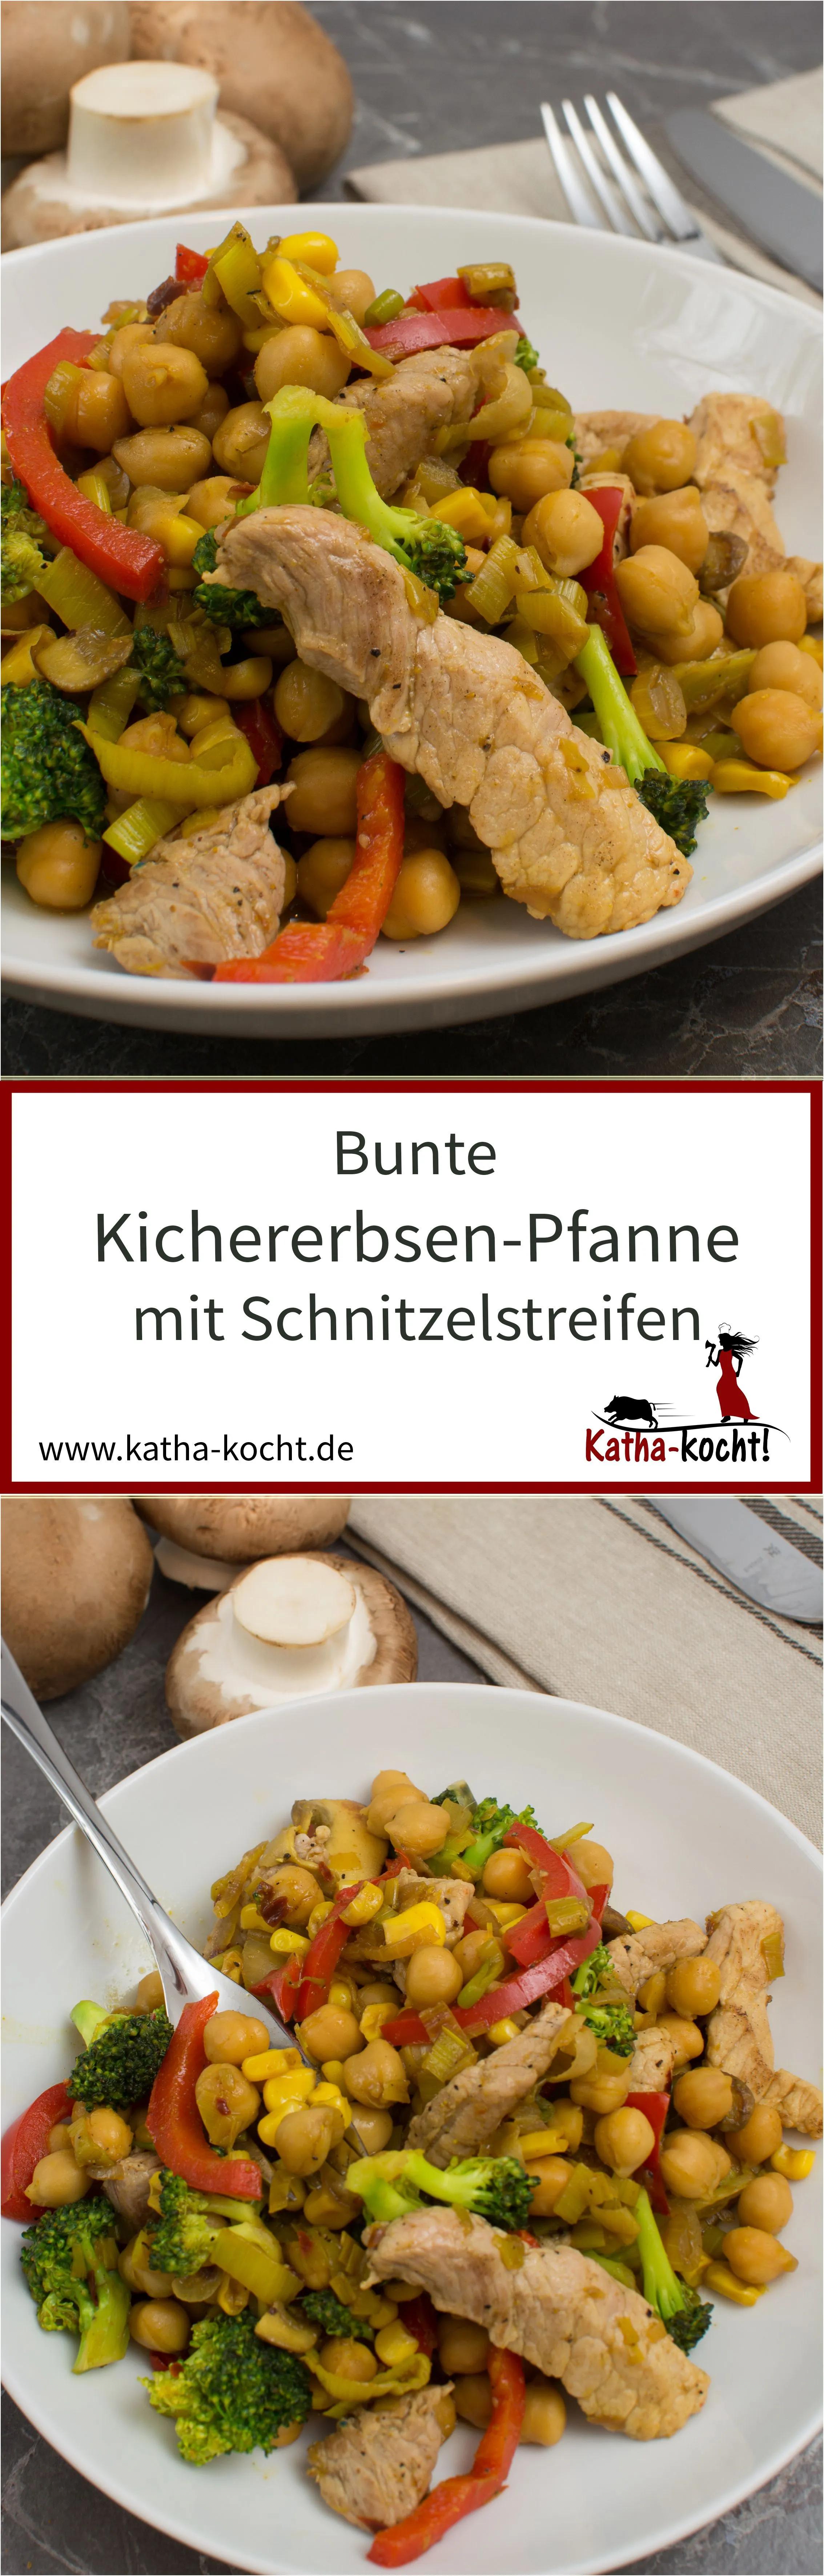 Bunte Kichererbsen-Pfanne mit Schnitzelstreifen - Katha-kocht ...